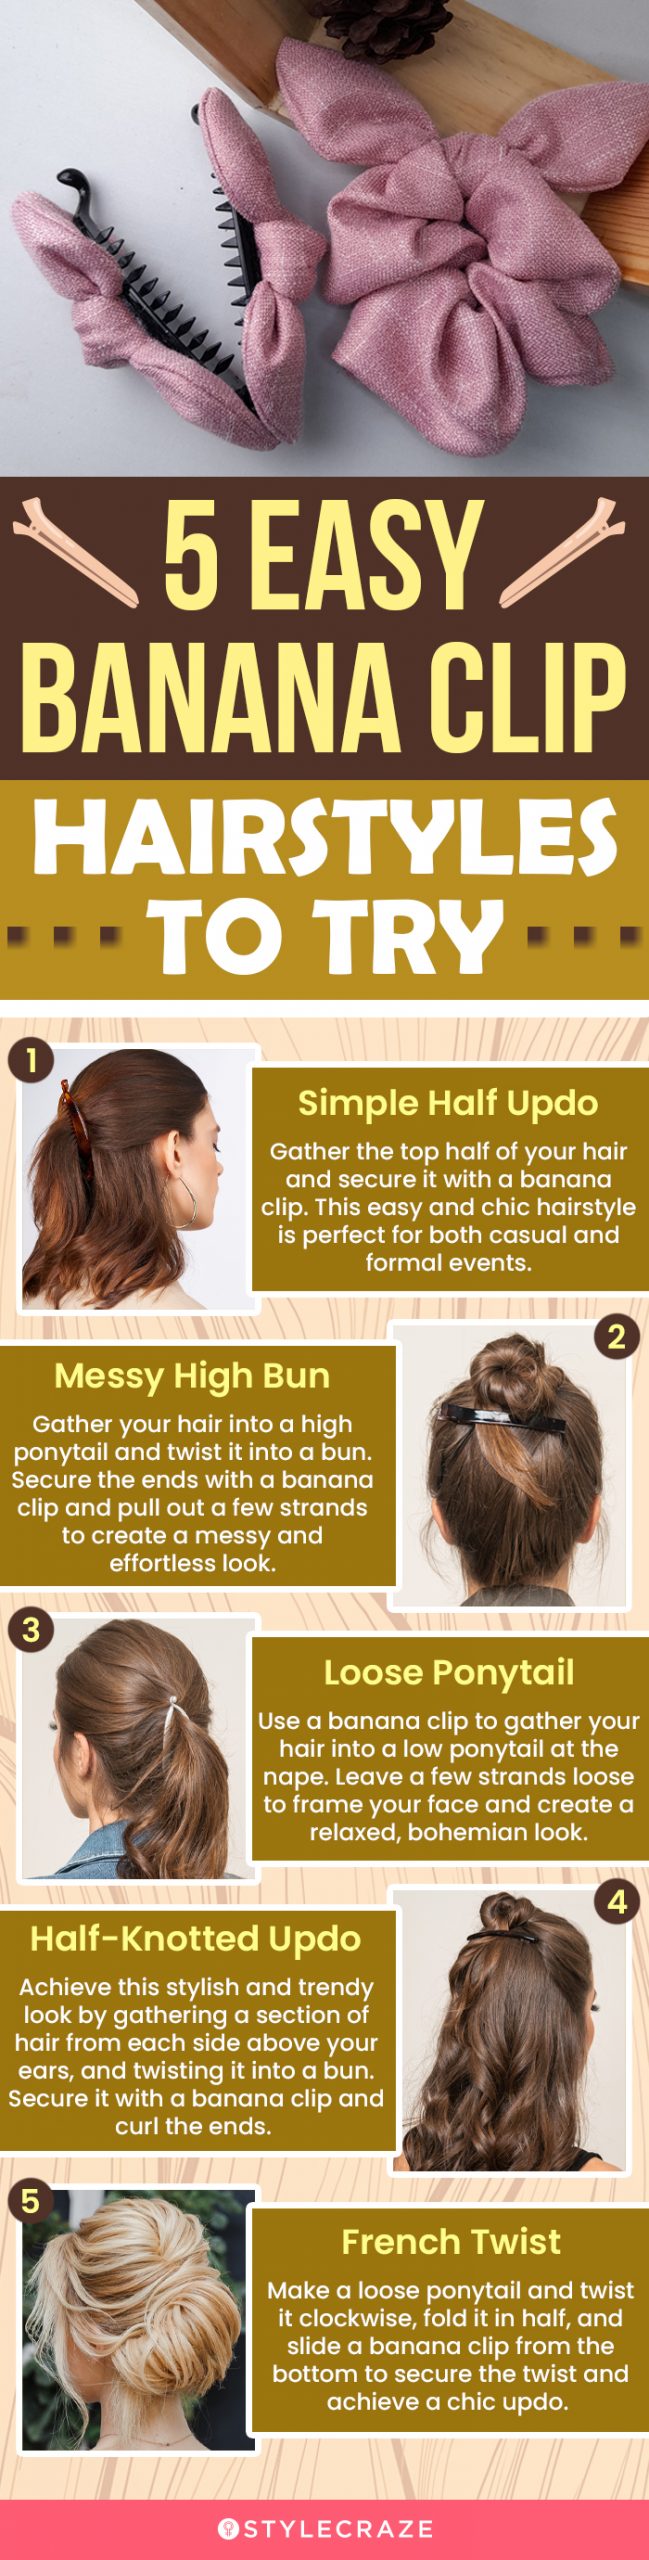 Amazon.com : CAISHA by PRETTYSHOP 100% HUMAN HAIR Scrunchie Hair Piece Updo  Braid Hair Scrunchy Messy Bun Natural Black H312f : Beauty & Personal Care